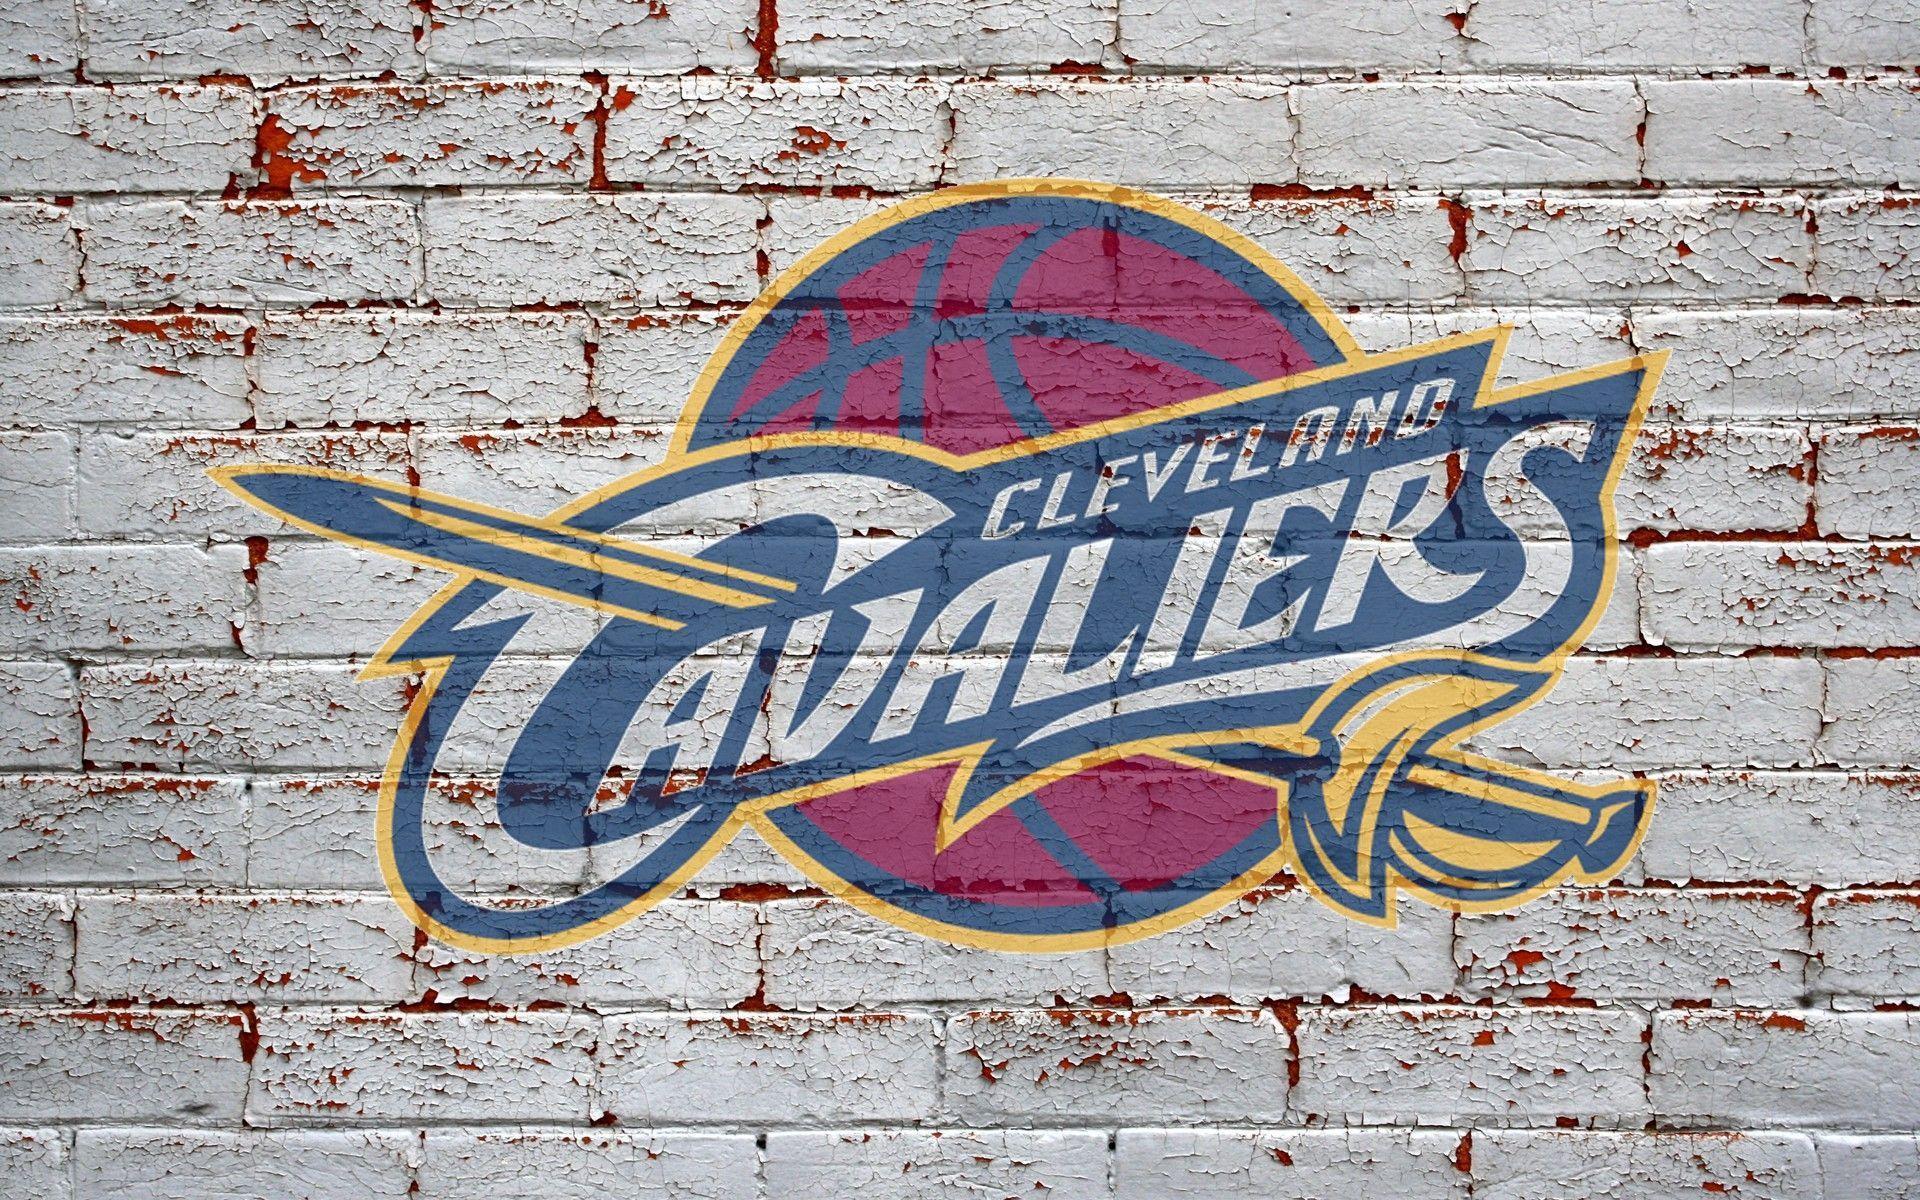 CLEVELAND CAVALIERS Nba Basketball team logo wallpaper Wallpaper